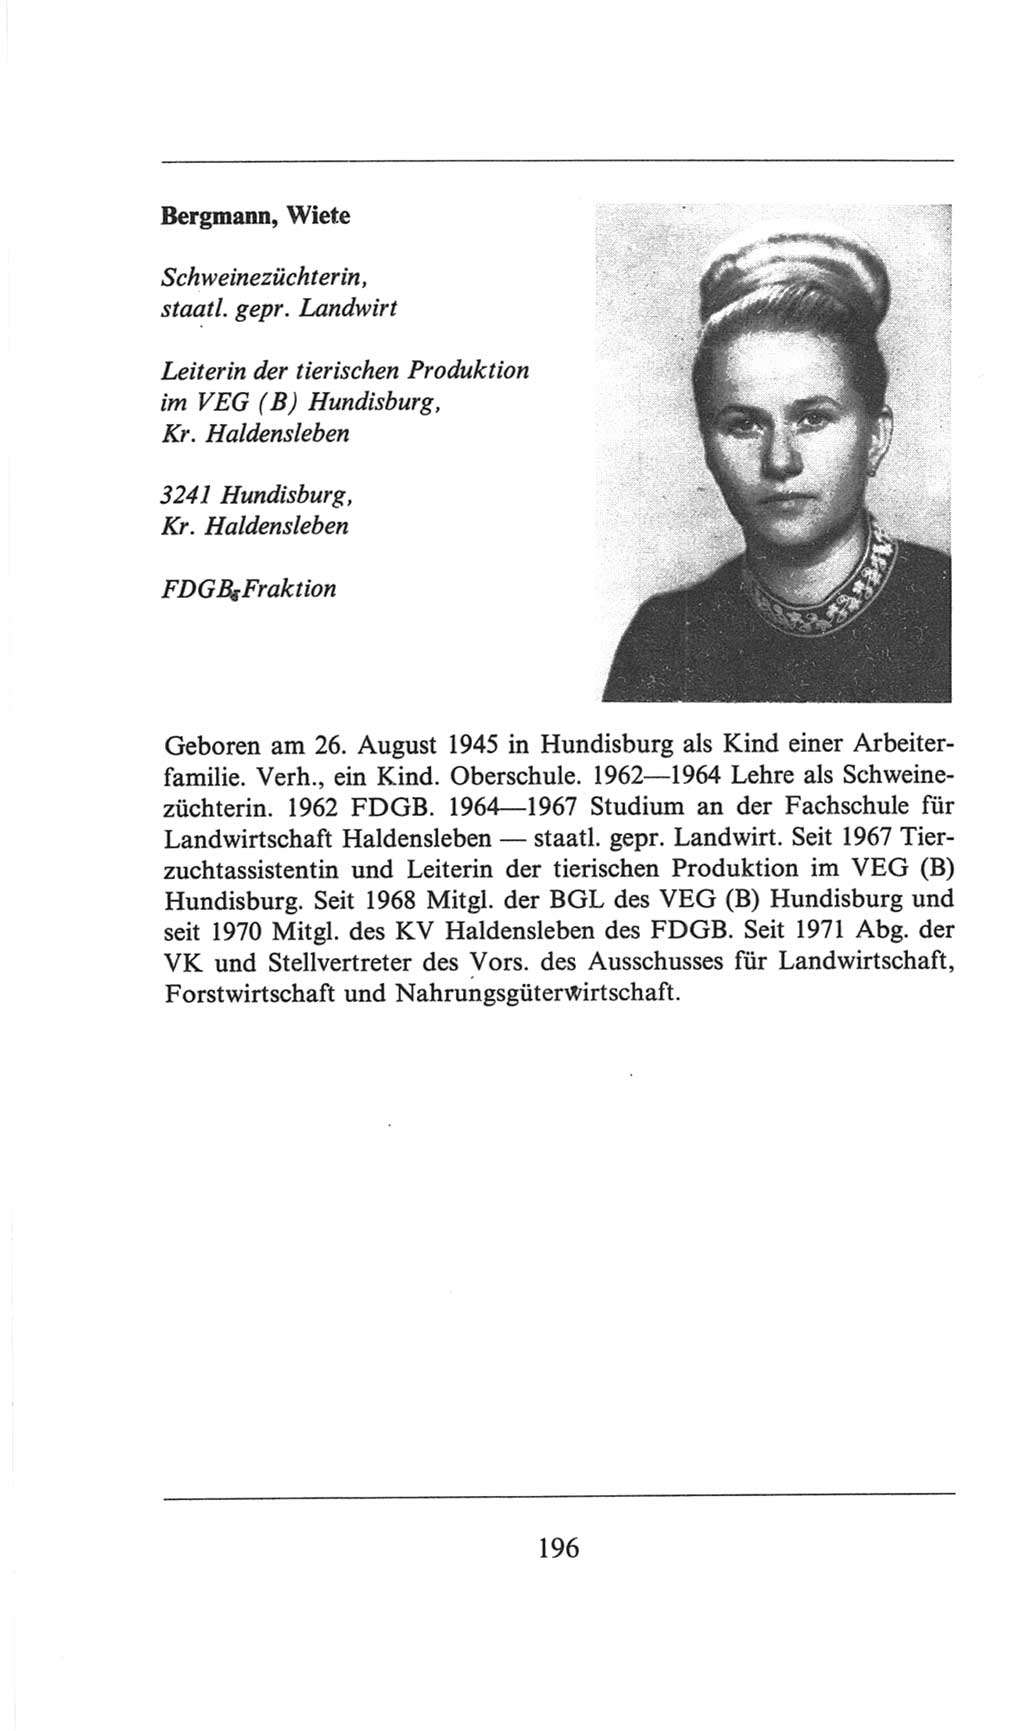 Volkskammer (VK) der Deutschen Demokratischen Republik (DDR), 6. Wahlperiode 1971-1976, Seite 196 (VK. DDR 6. WP. 1971-1976, S. 196)